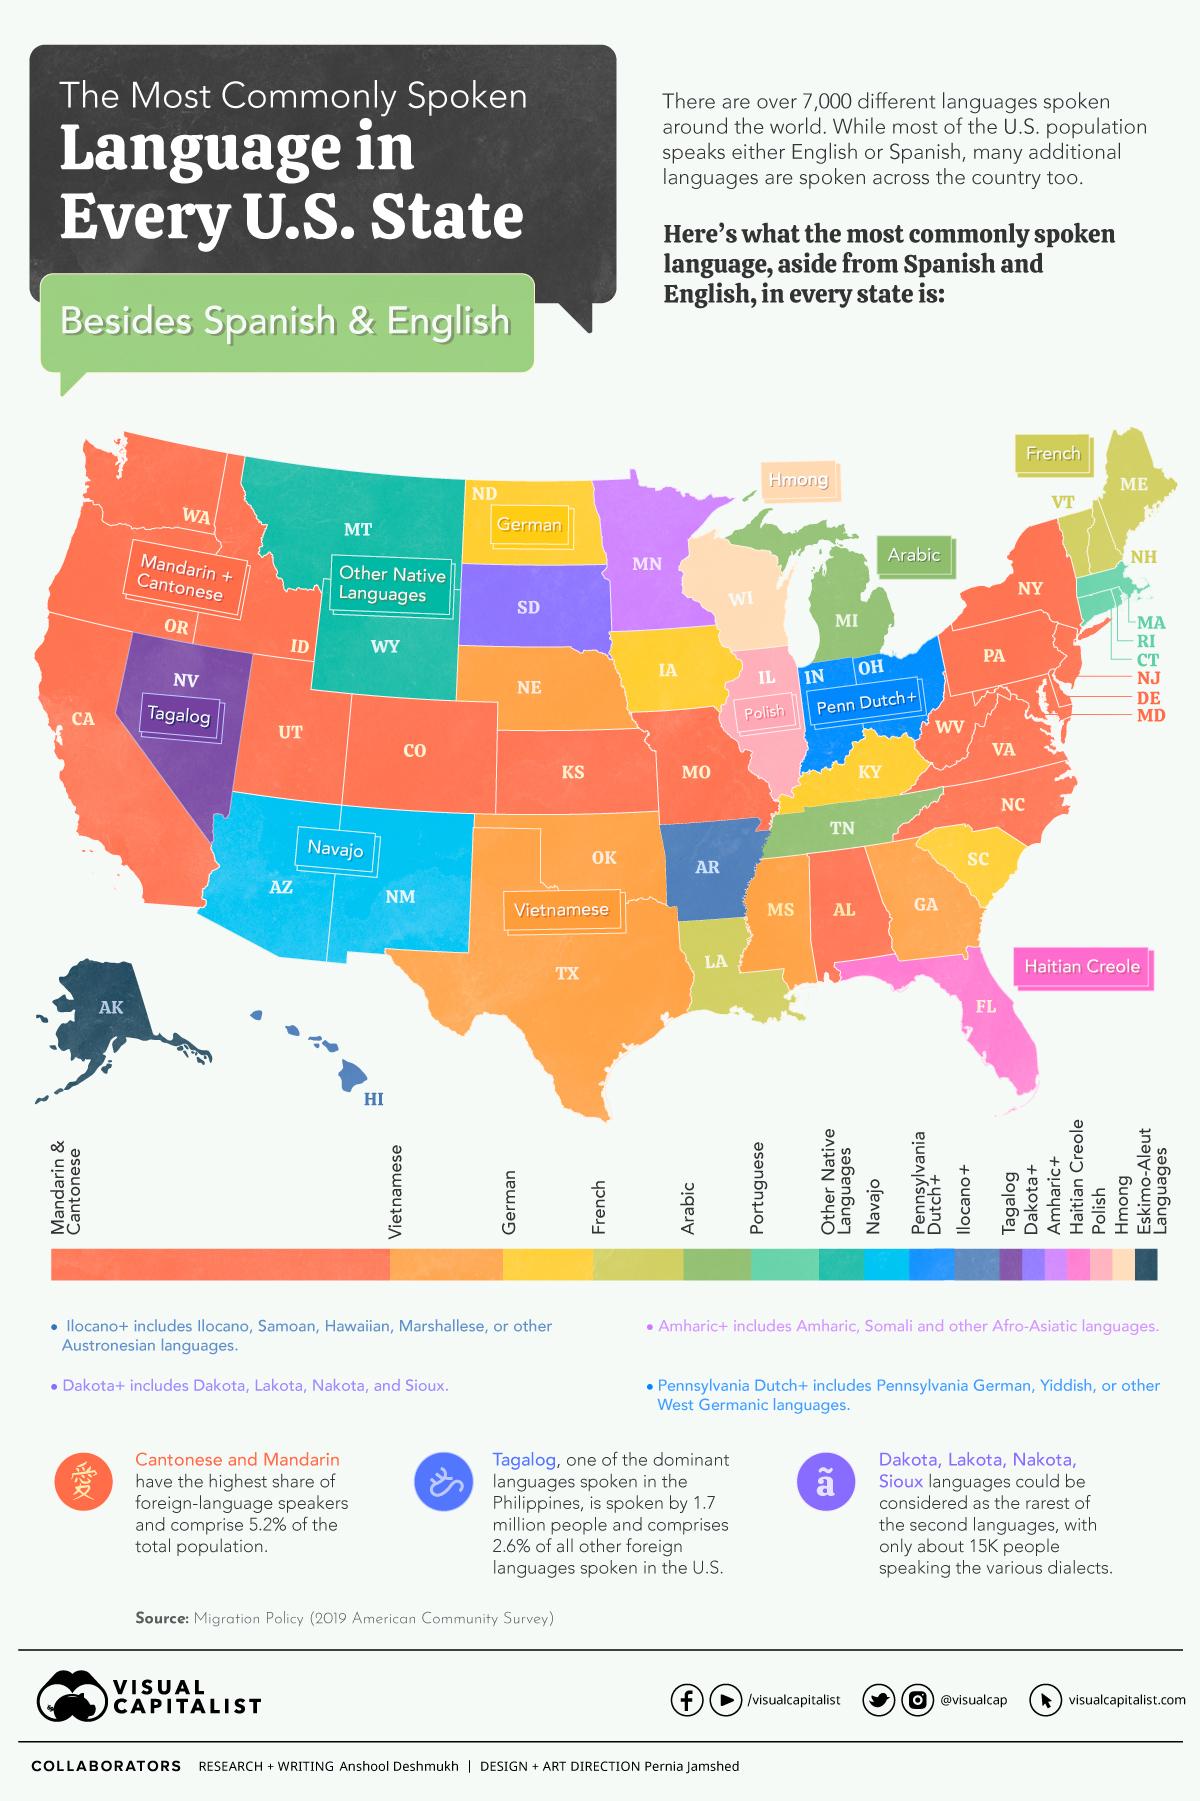 独立站seo小问题(②):美国各州最常用的语言(英语和西班牙语除外)